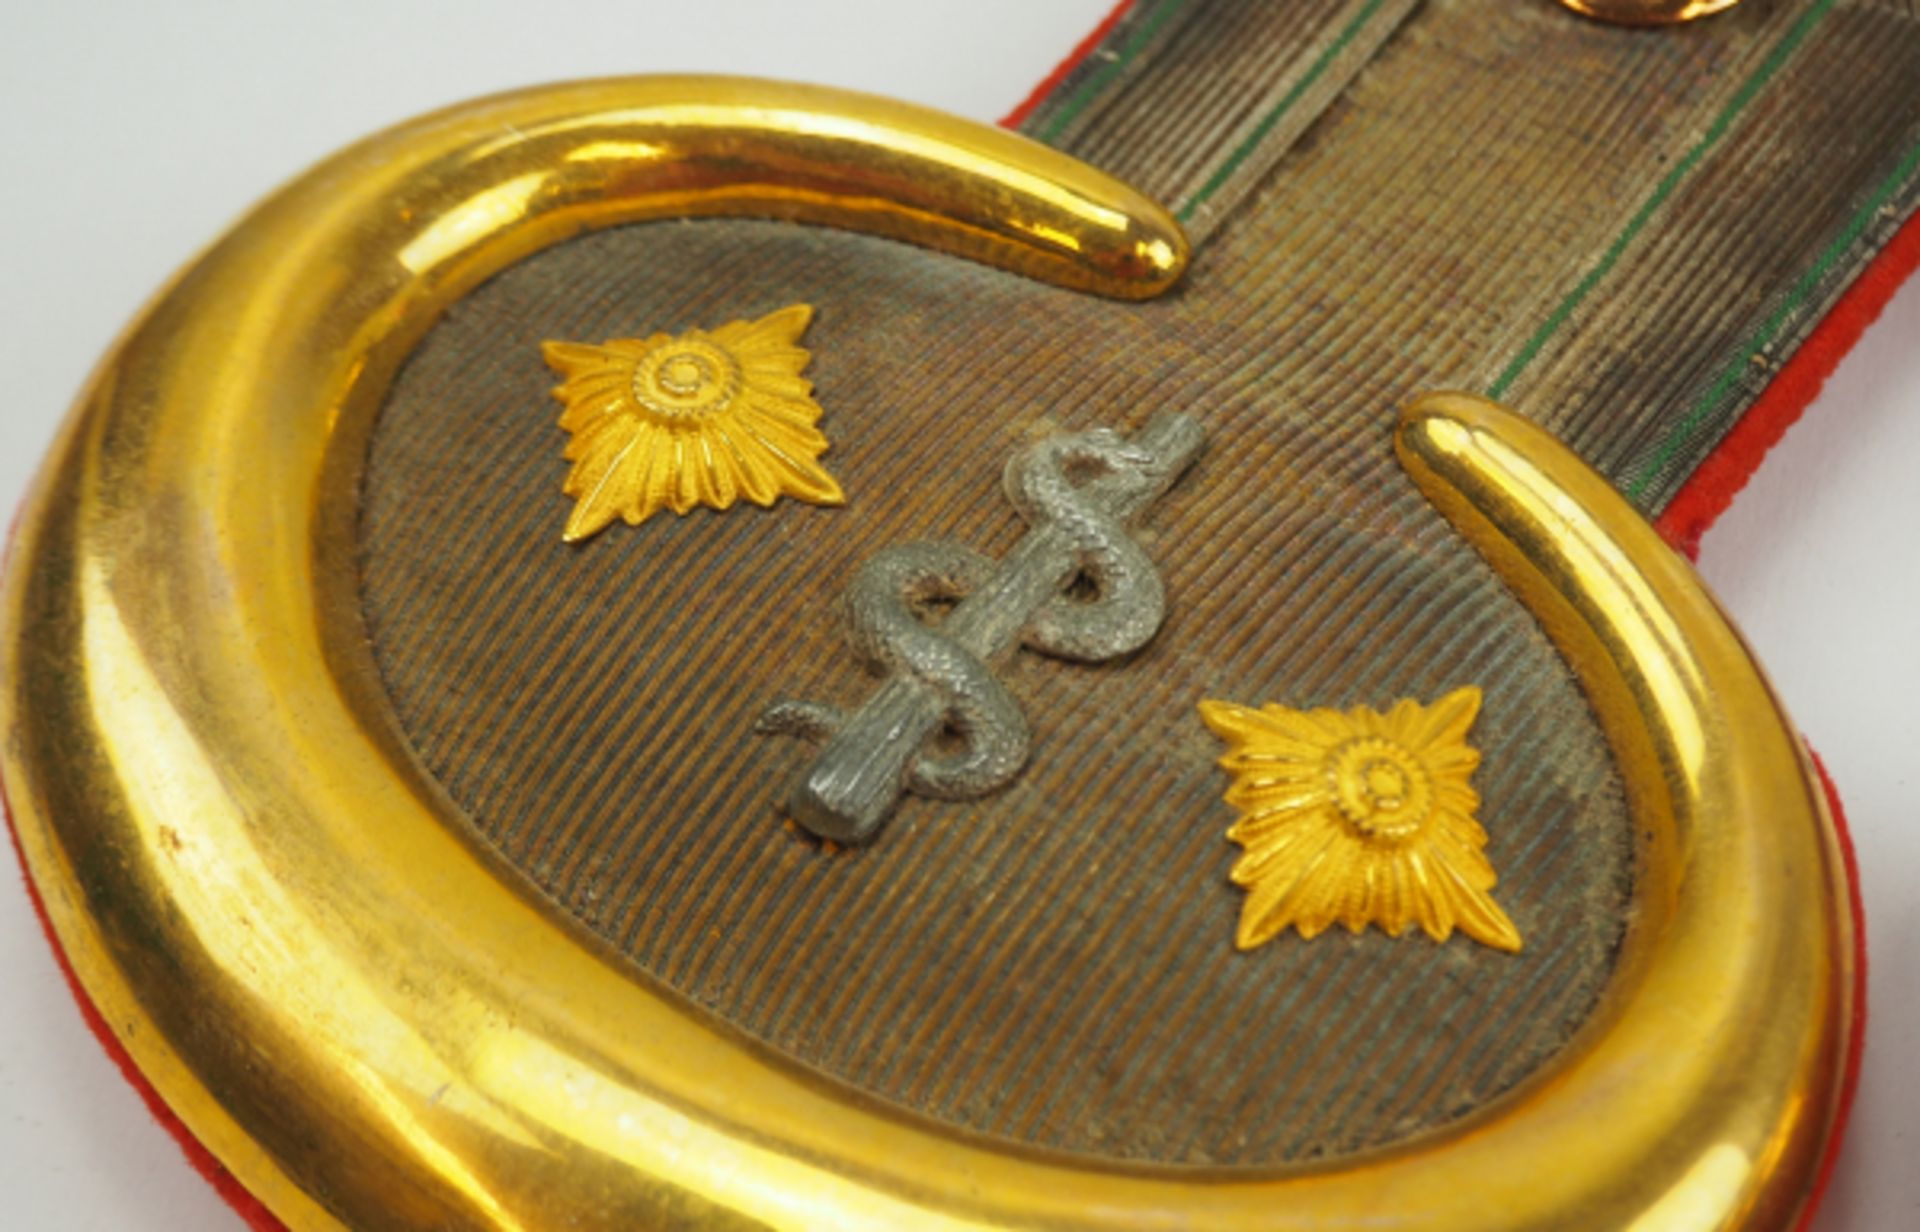 Sachsen: Paar Epauletten für einen Stabsarzt.Goldene Felder, goldene Monde, die Pickel in Gold, - Bild 2 aus 3